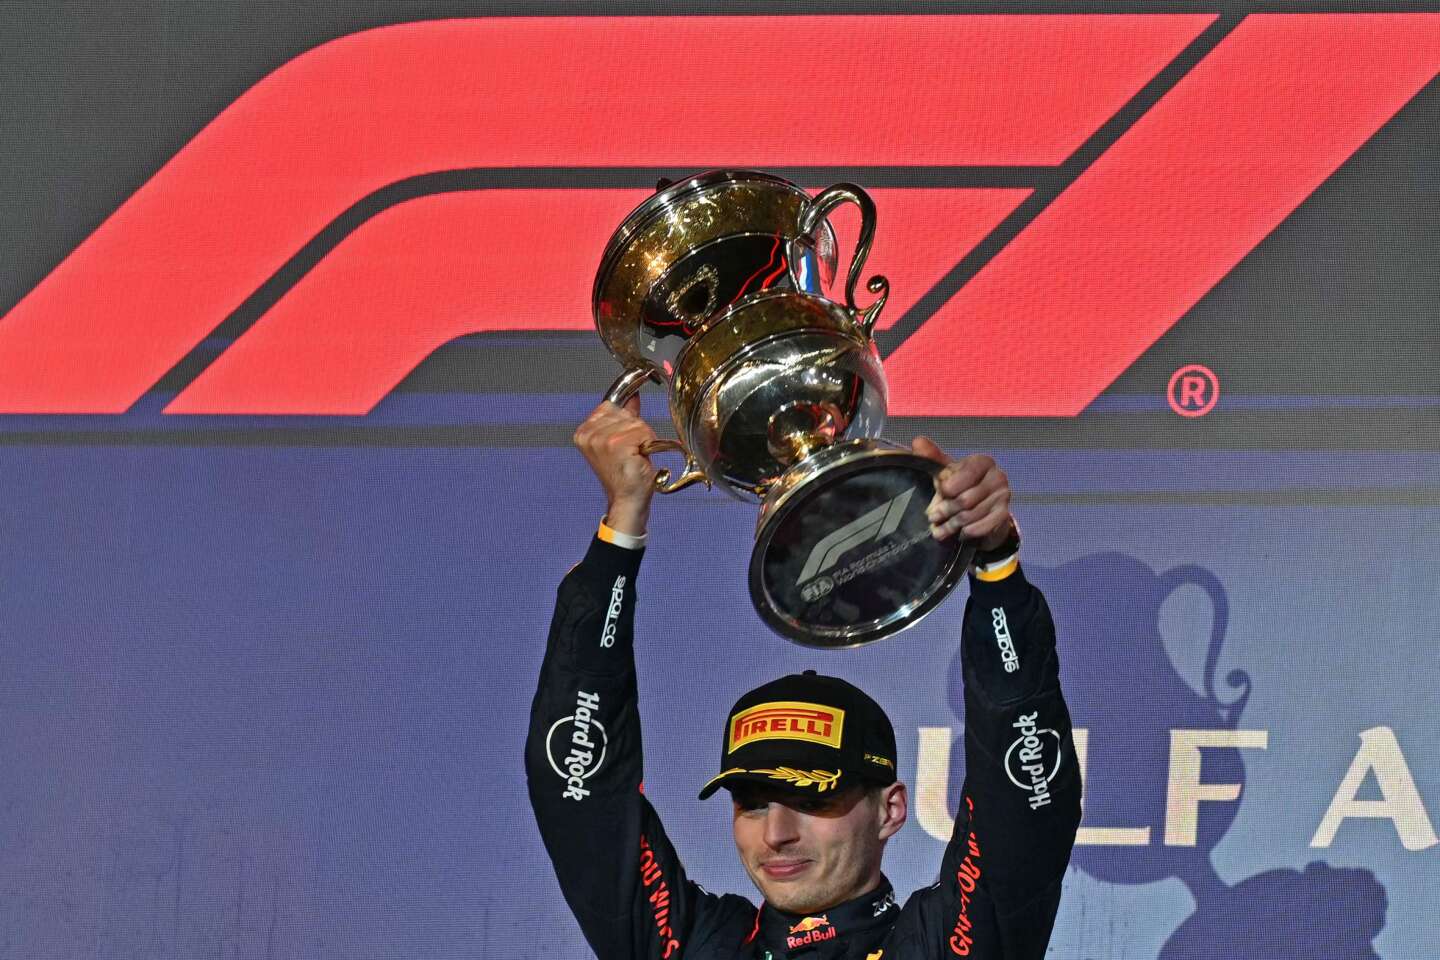 Para su regreso a clases, Max Verstappen sobrevuela la competencia en Bahrein